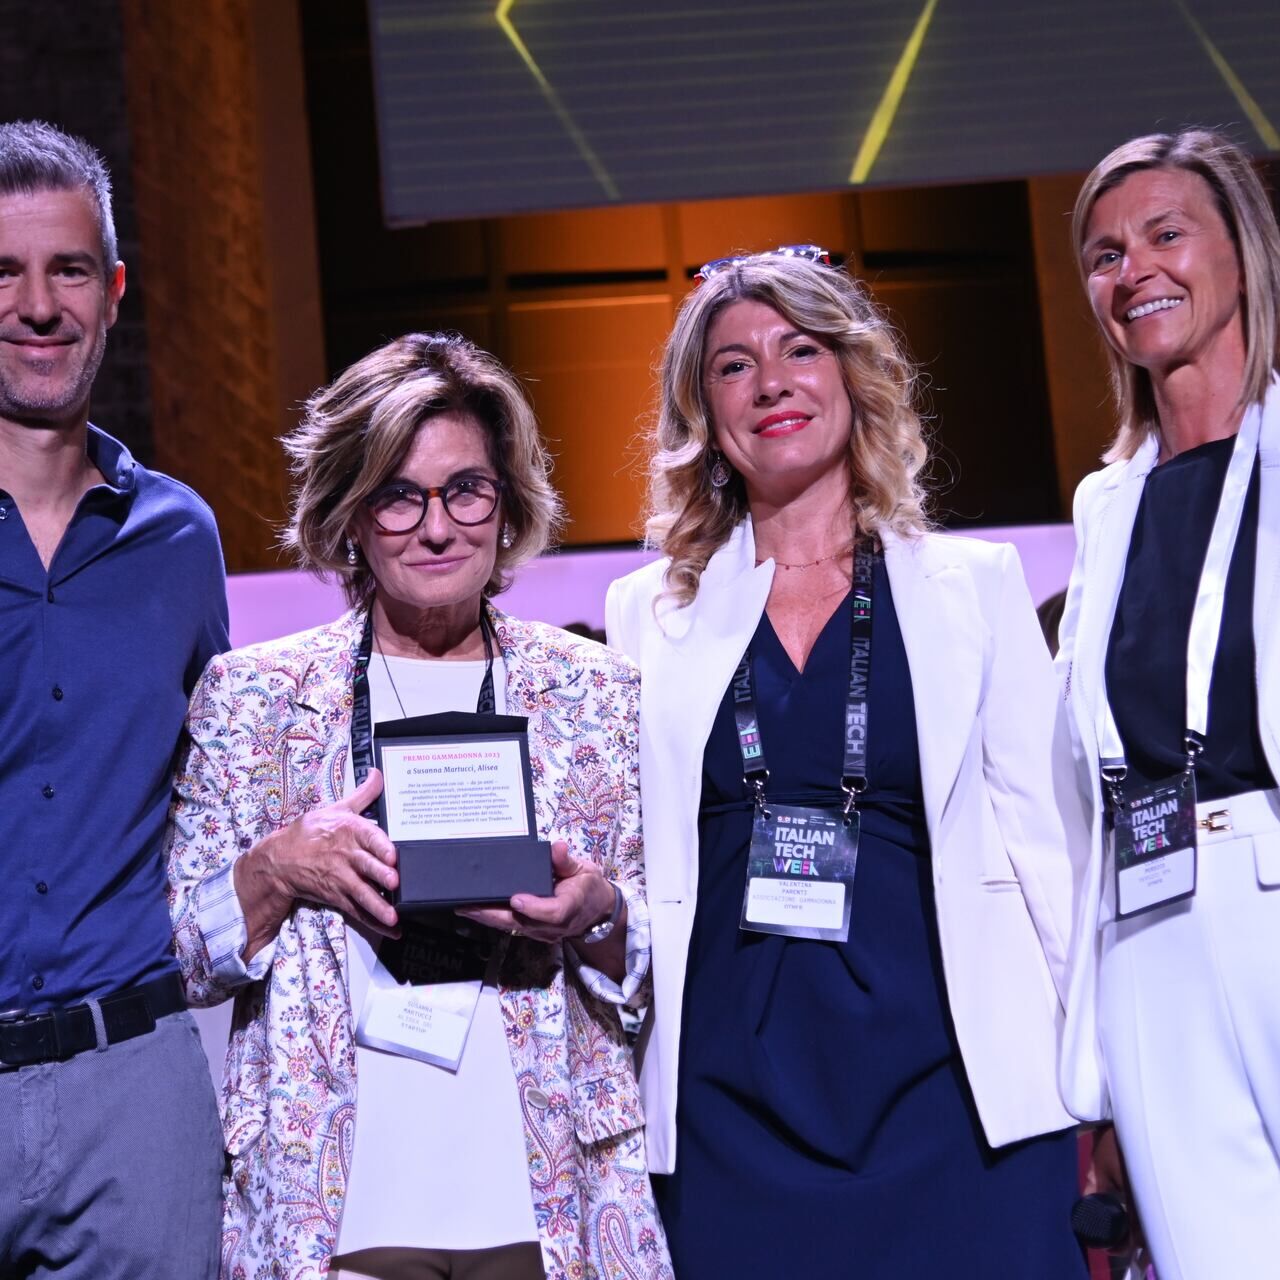 Nagrada GammaDonna: Marco i Valentina Parenti, Susanna Martucci i Claudia Persico